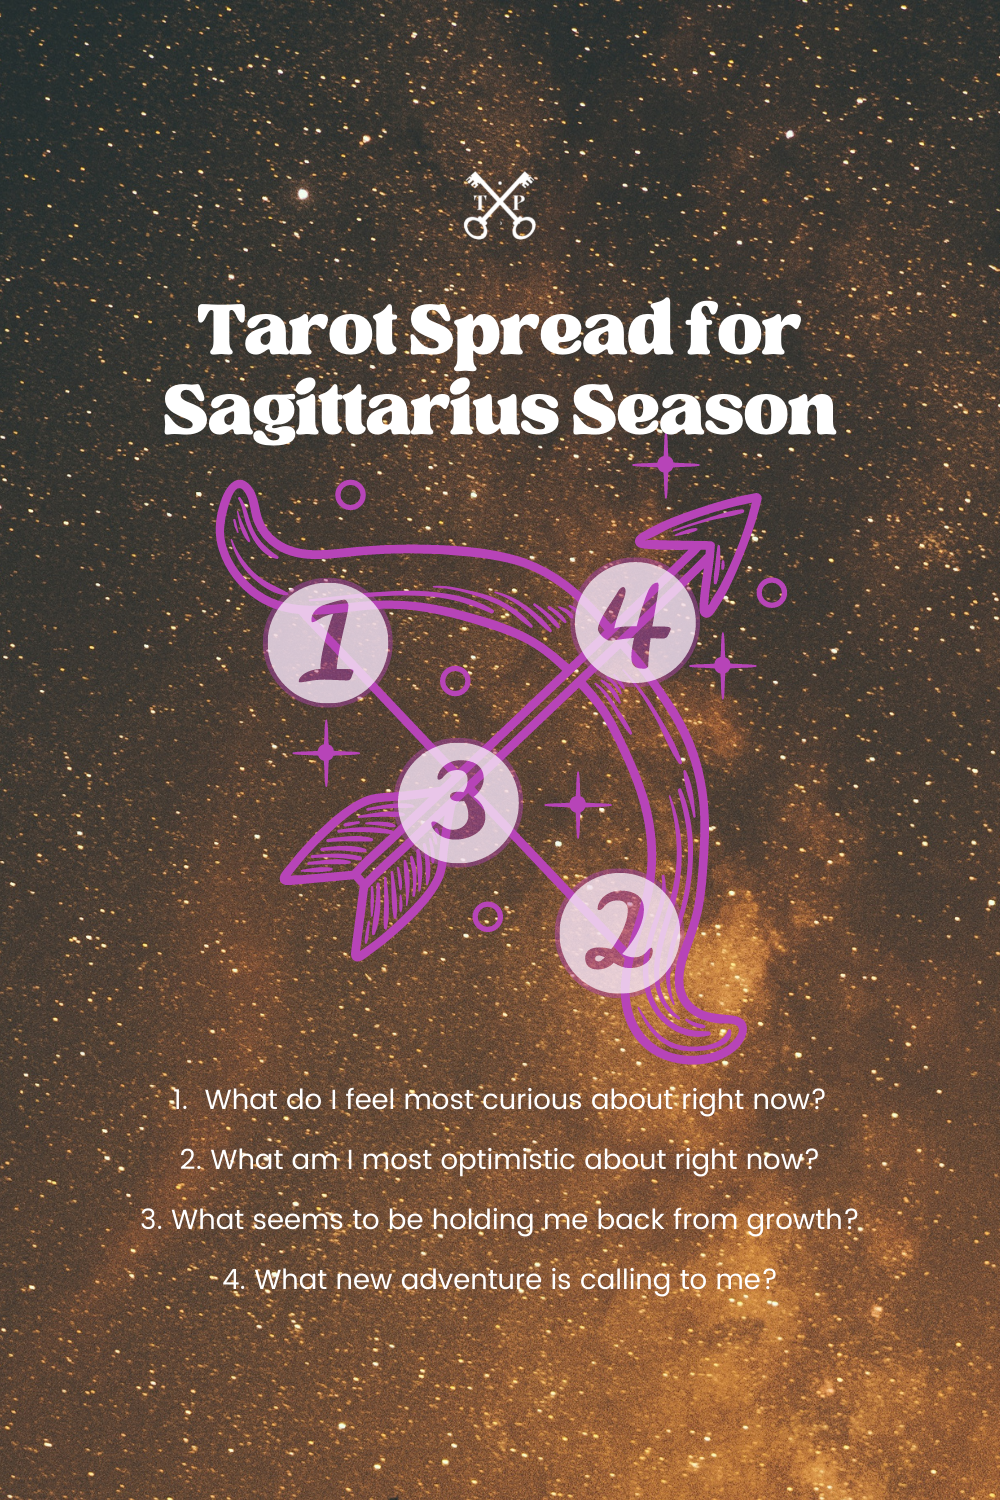 Tarot Spread for Sagittarius Season | The Tarot Professor